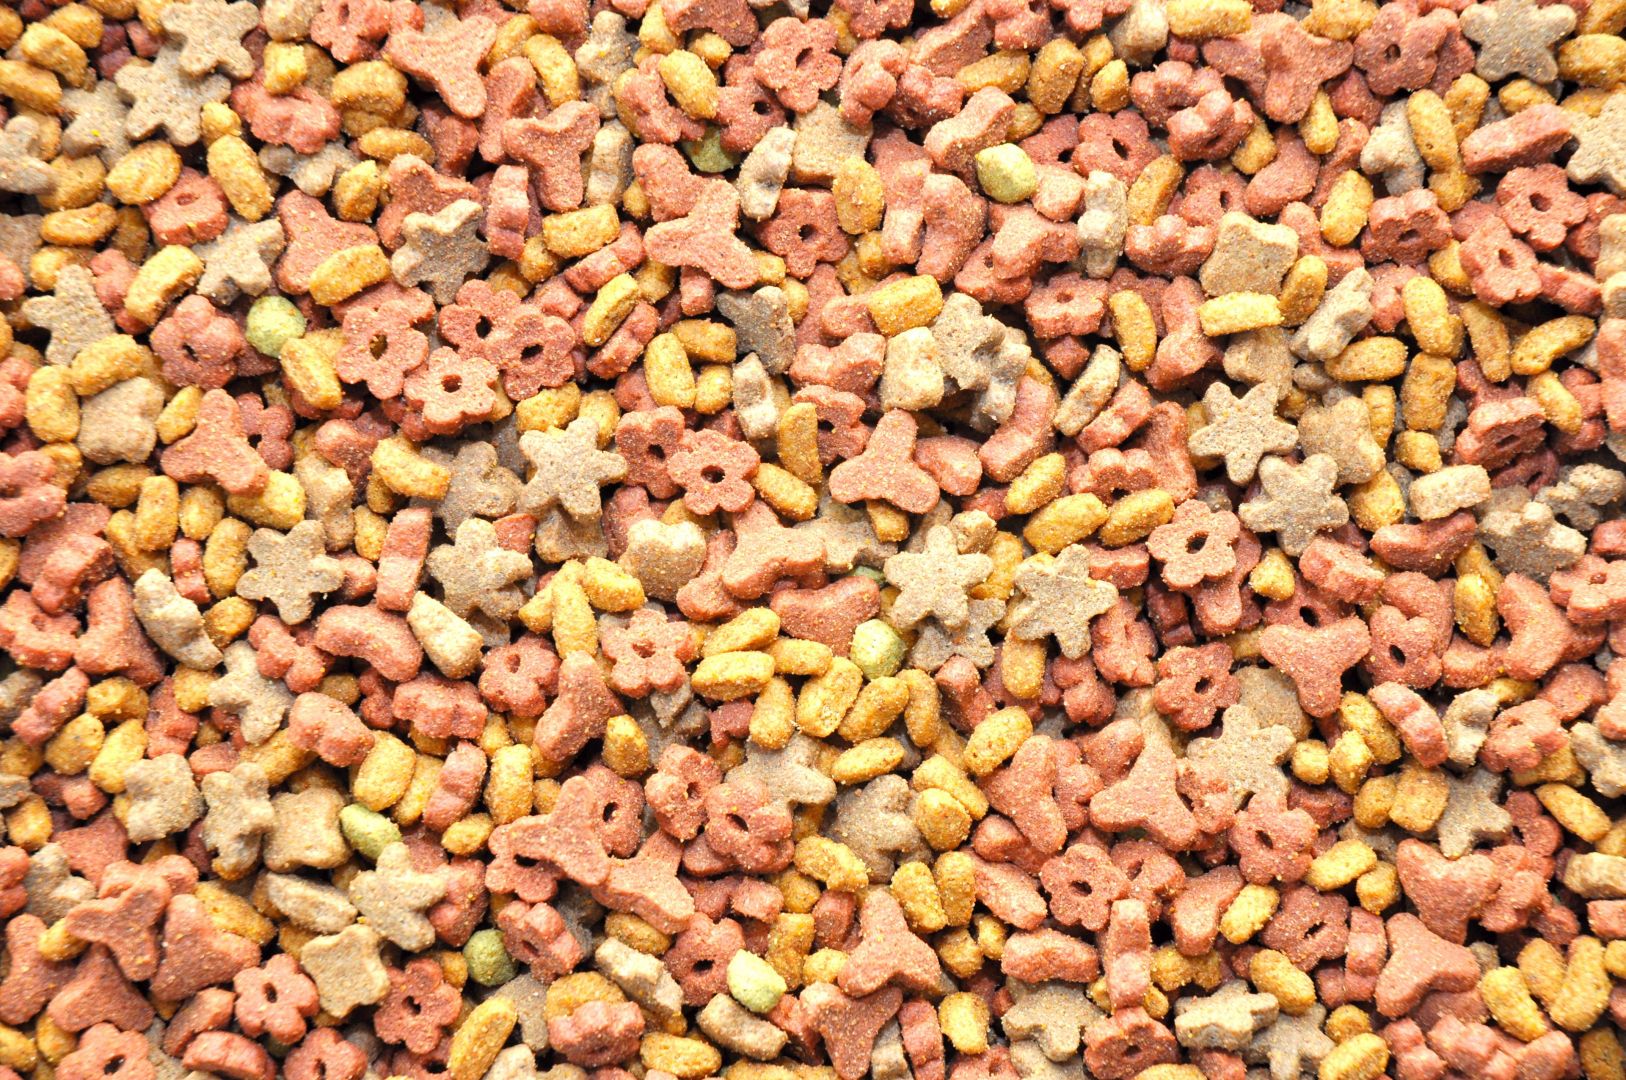 Poptávka na dodavatel, výroba a a dodání krmných směsí pro brojlery a morky (Krmivo) - Zlín